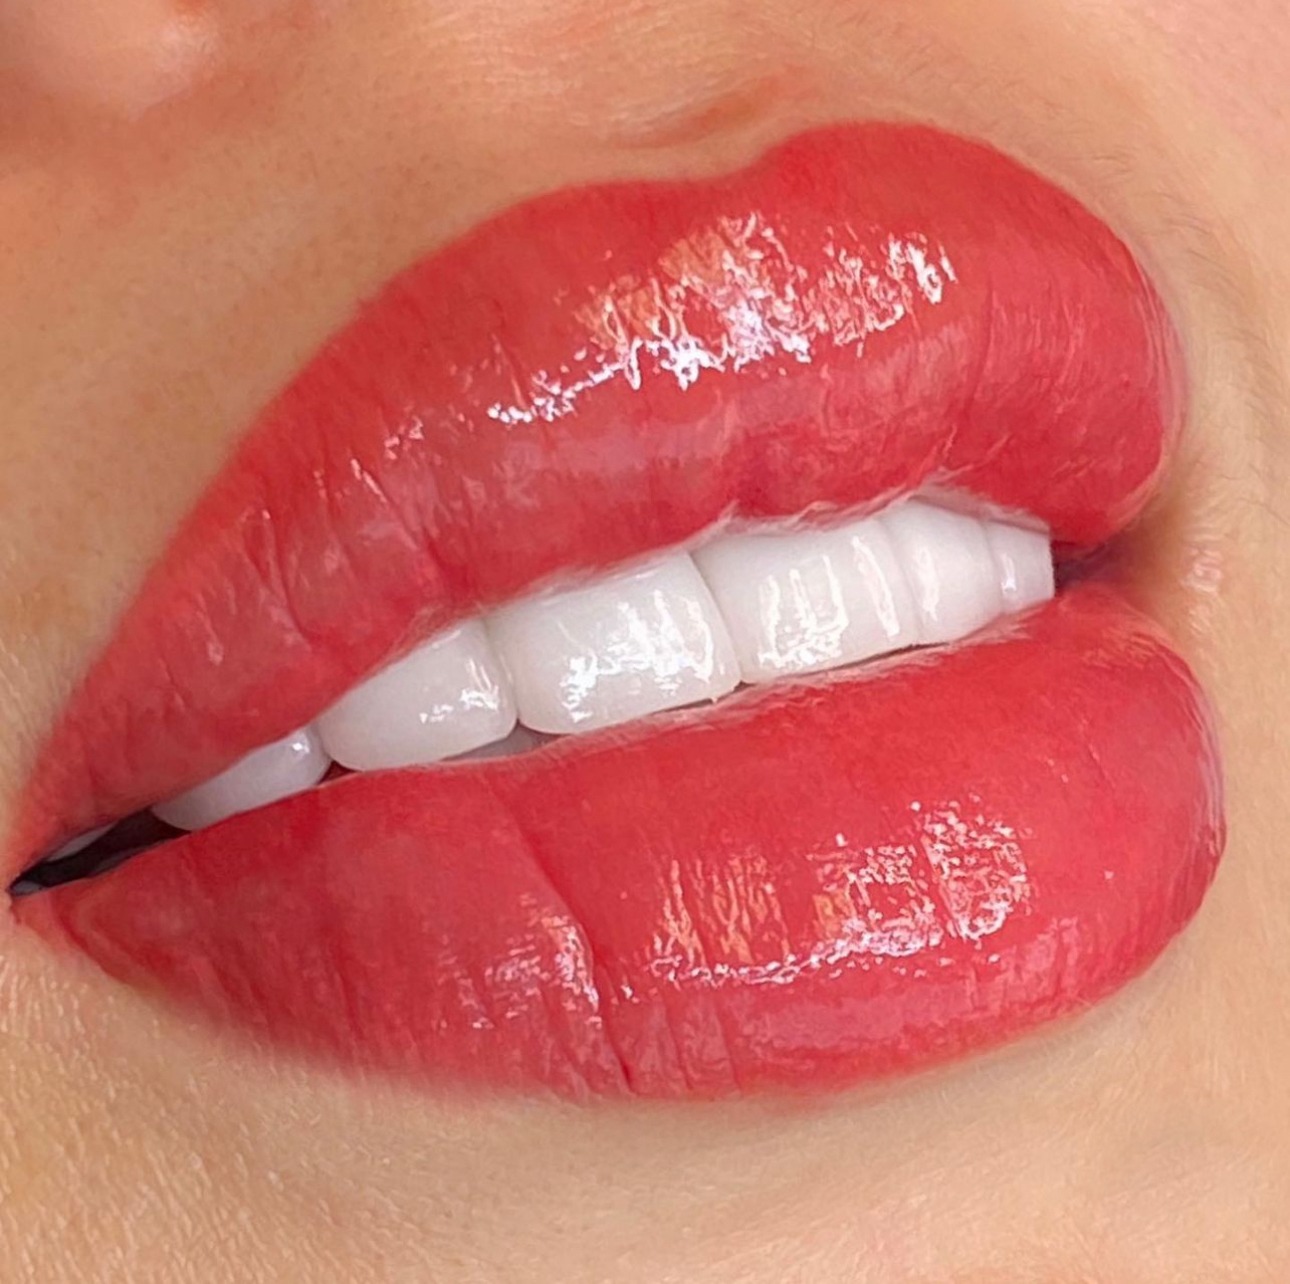 Red Lip Blush Healing